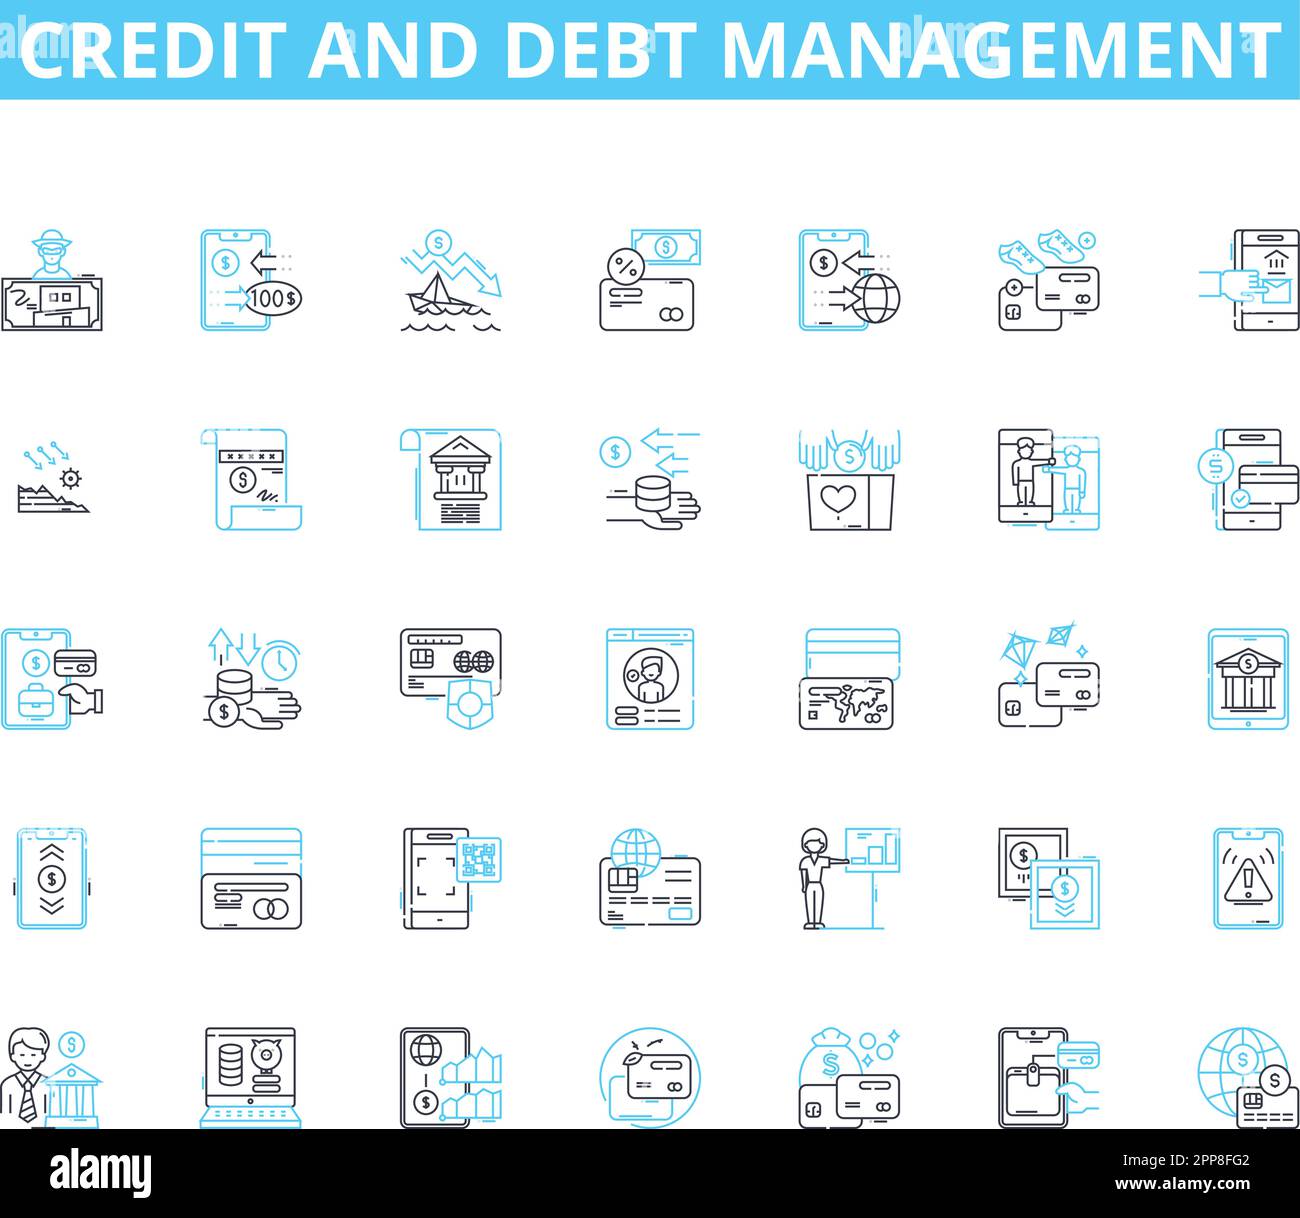 Lineare Symbolgruppe für Kredit- und Schuldenmanagement. Credirthiness, Interest, Balance, Budget, Score, Vektor- und Konzeptschilder für Finanzen, Sammlungslinien Stock Vektor